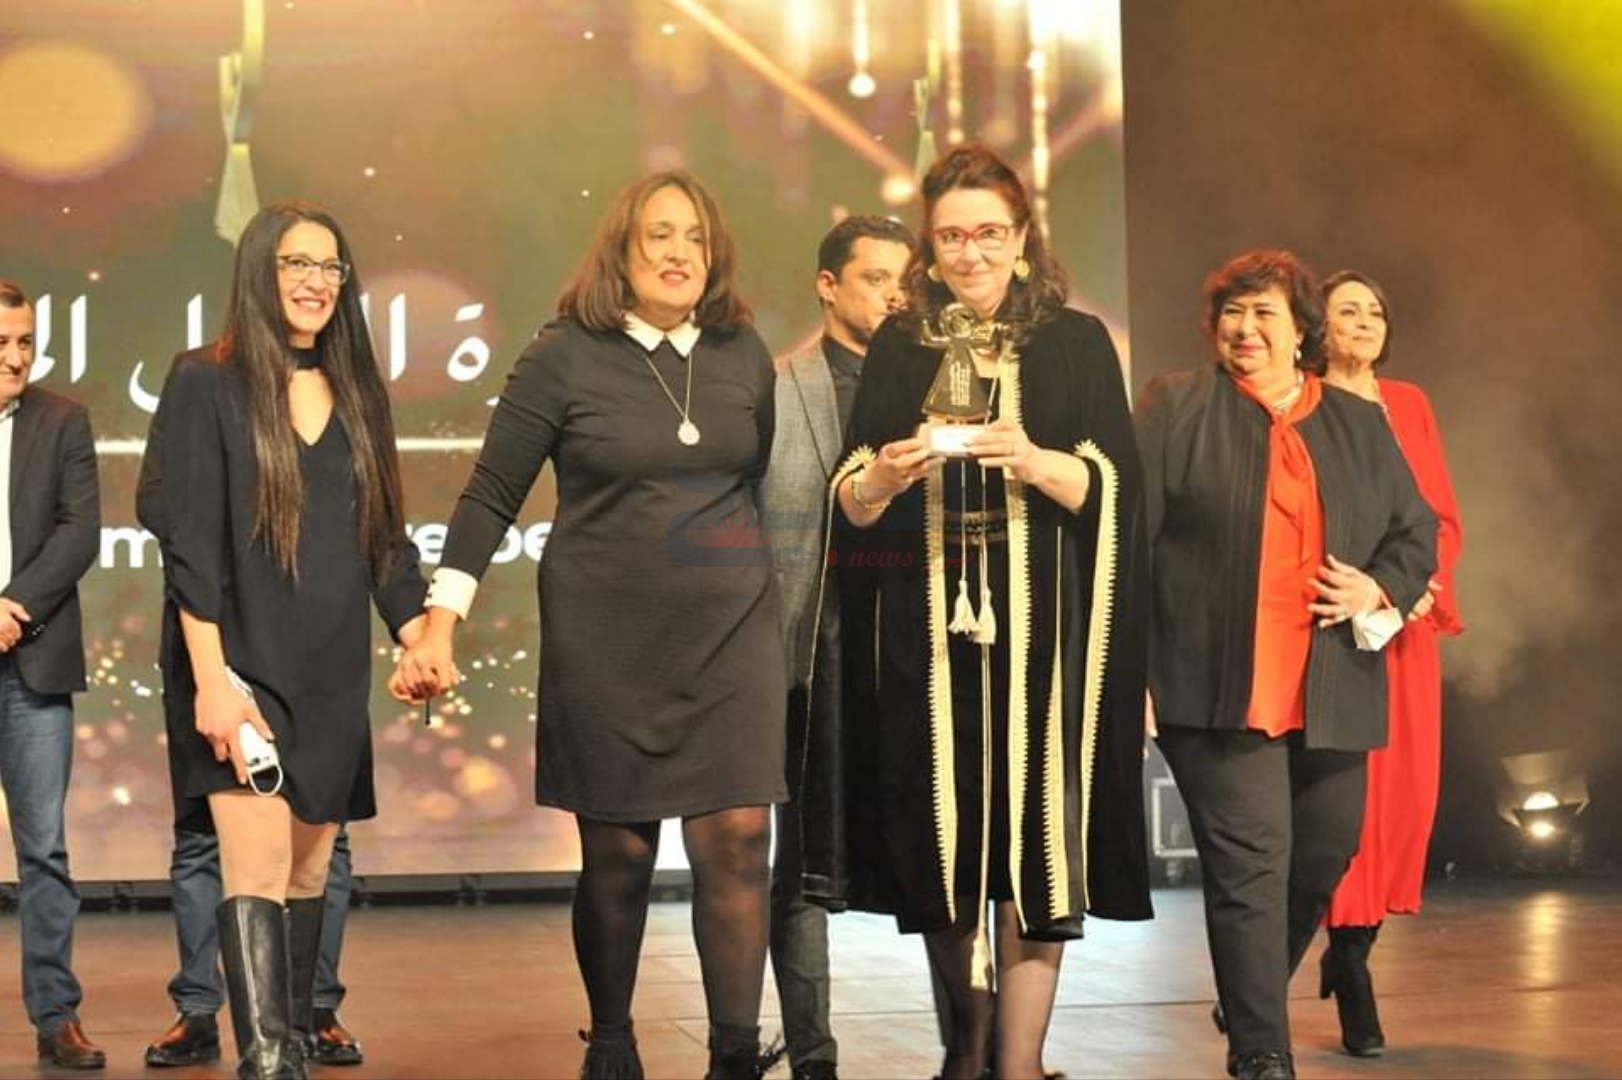 المسرحية التونسية "آخر مرة" لوفاء الطبوبي تتوج بالجائزة الكبرى لأيام قرطاج المسرحية